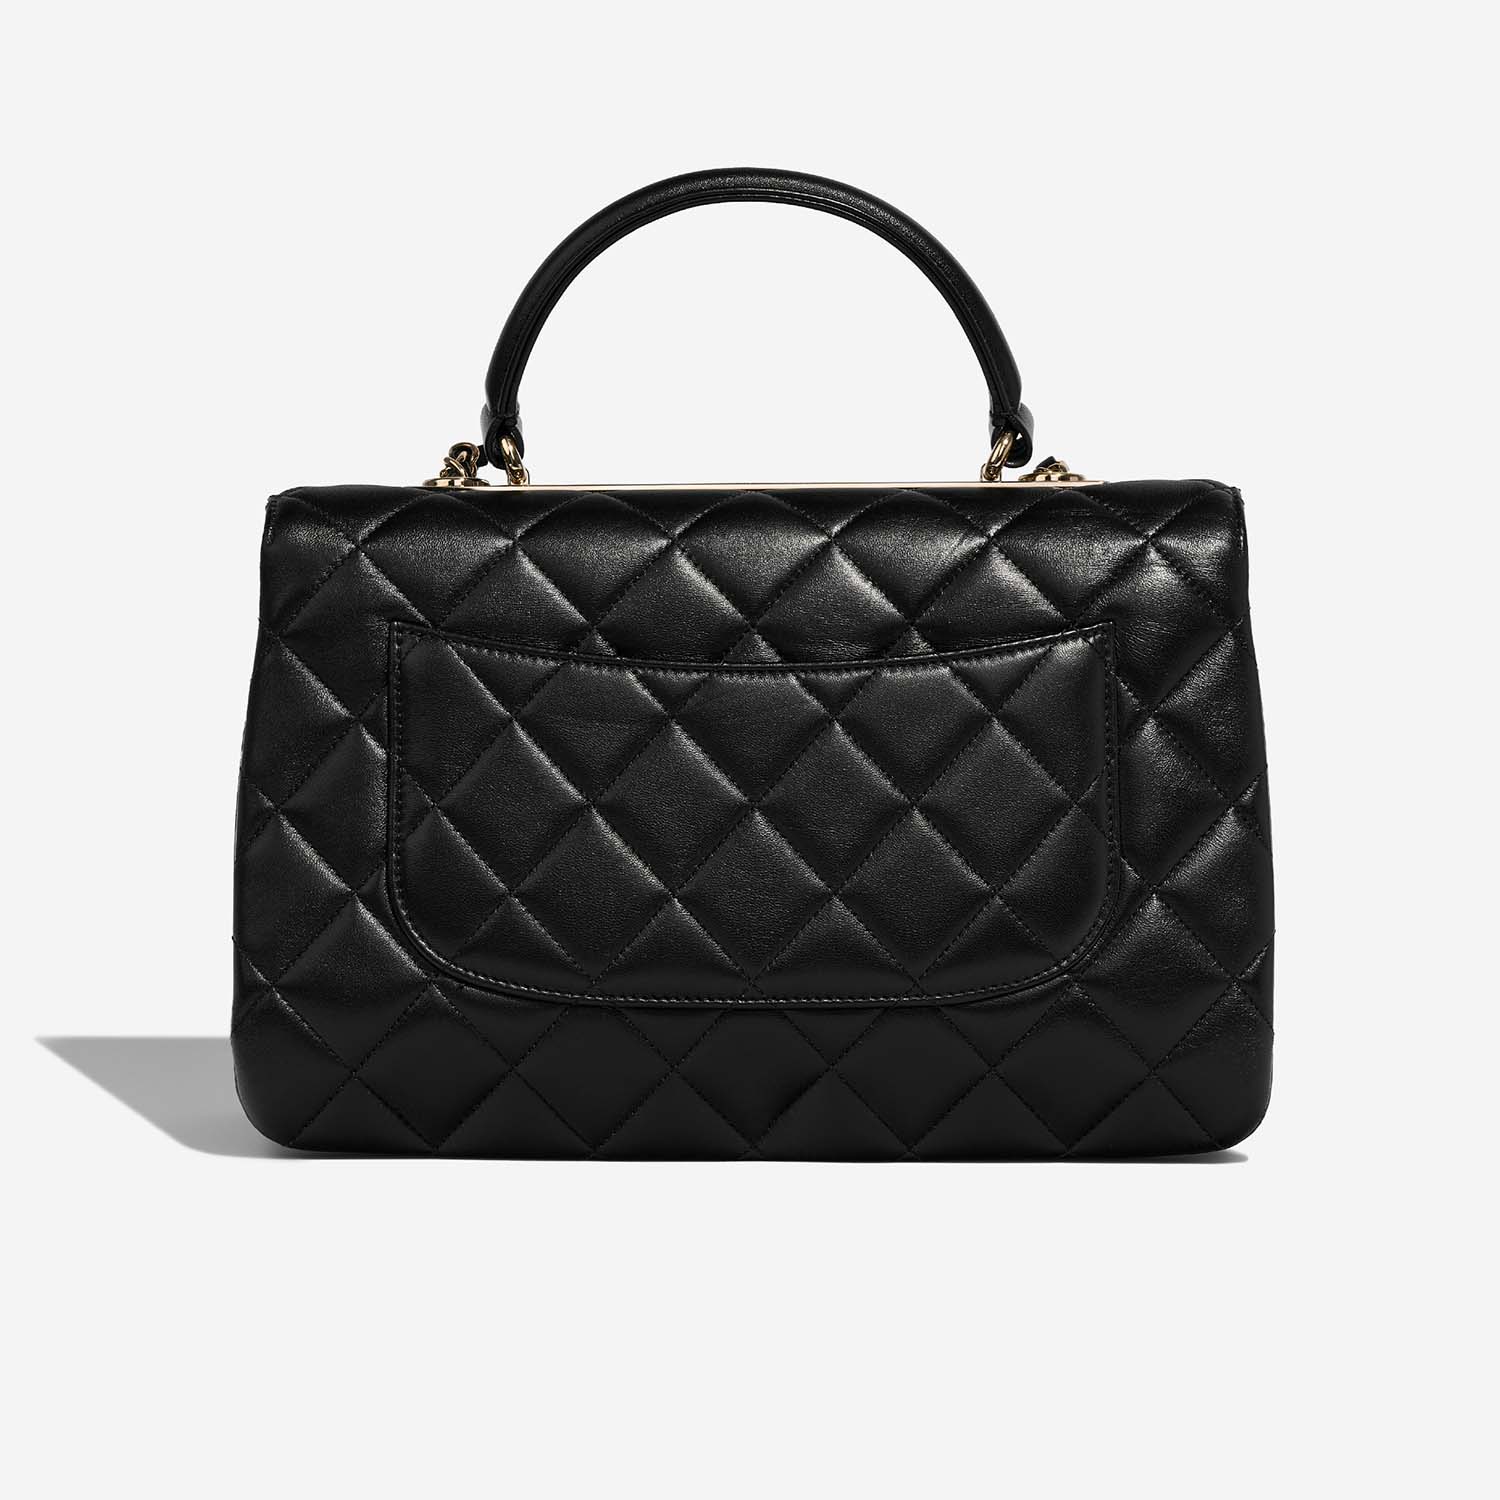 Chanel Trendy Large Black Back | Verkaufen Sie Ihre Designer-Tasche auf Saclab.com